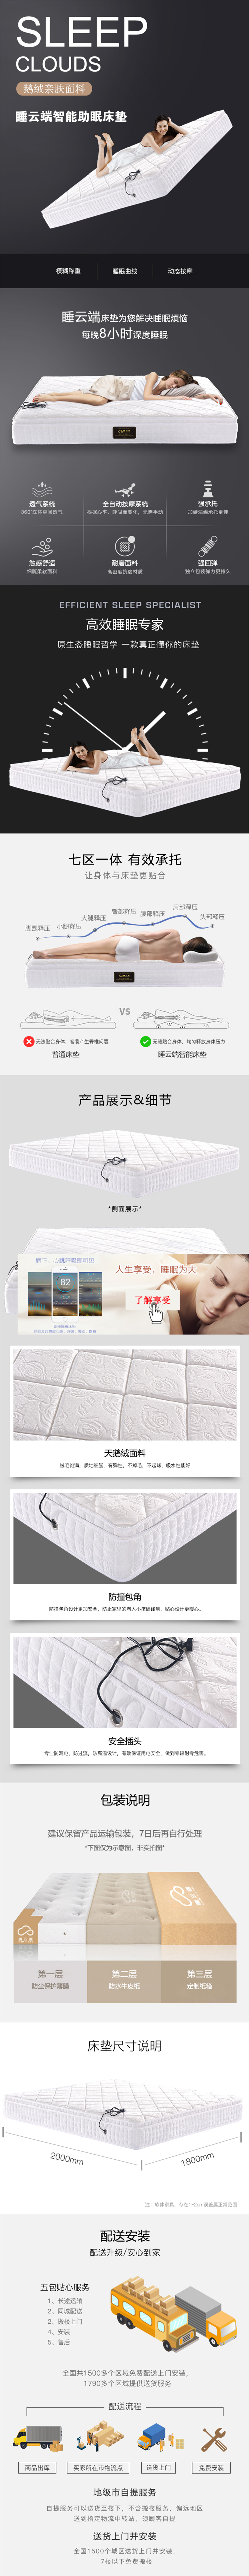 碧暇系列-中国十大排名床垫品牌_智能床垫-睡云端.jpg